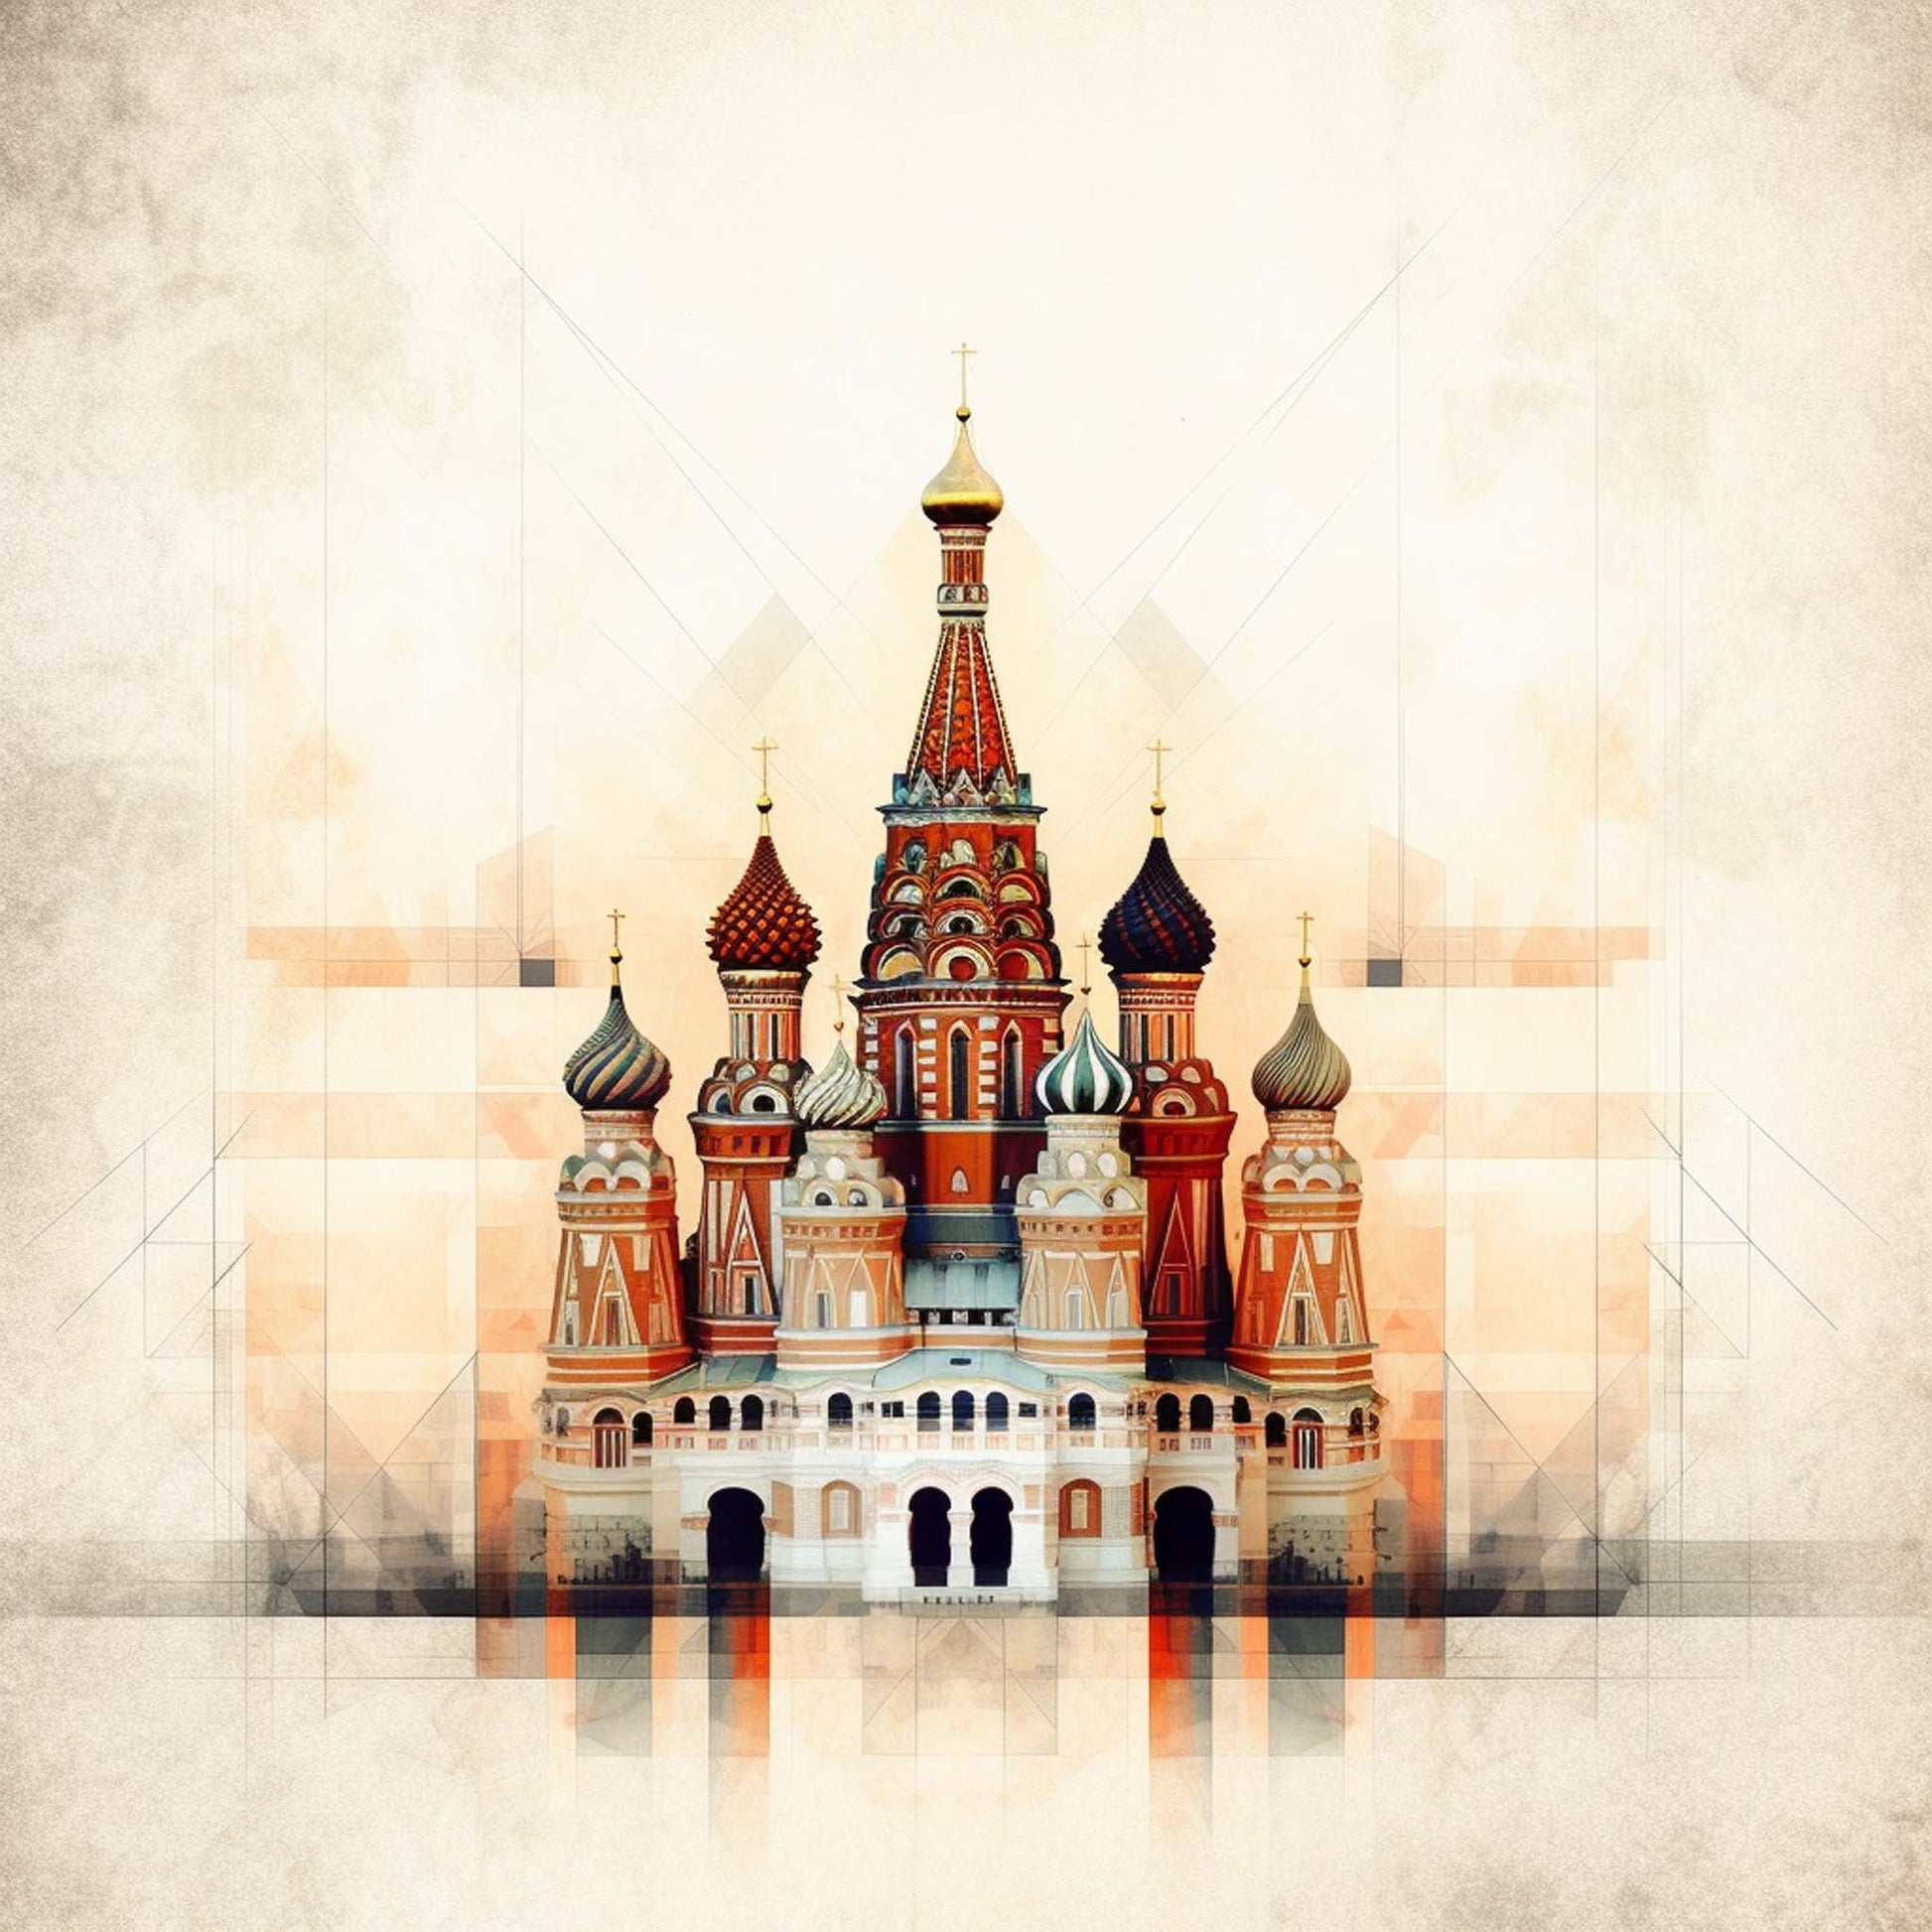 Urbanisto - Moskau Kreml - Wandbild in der Stilrichtung des Minimalismus